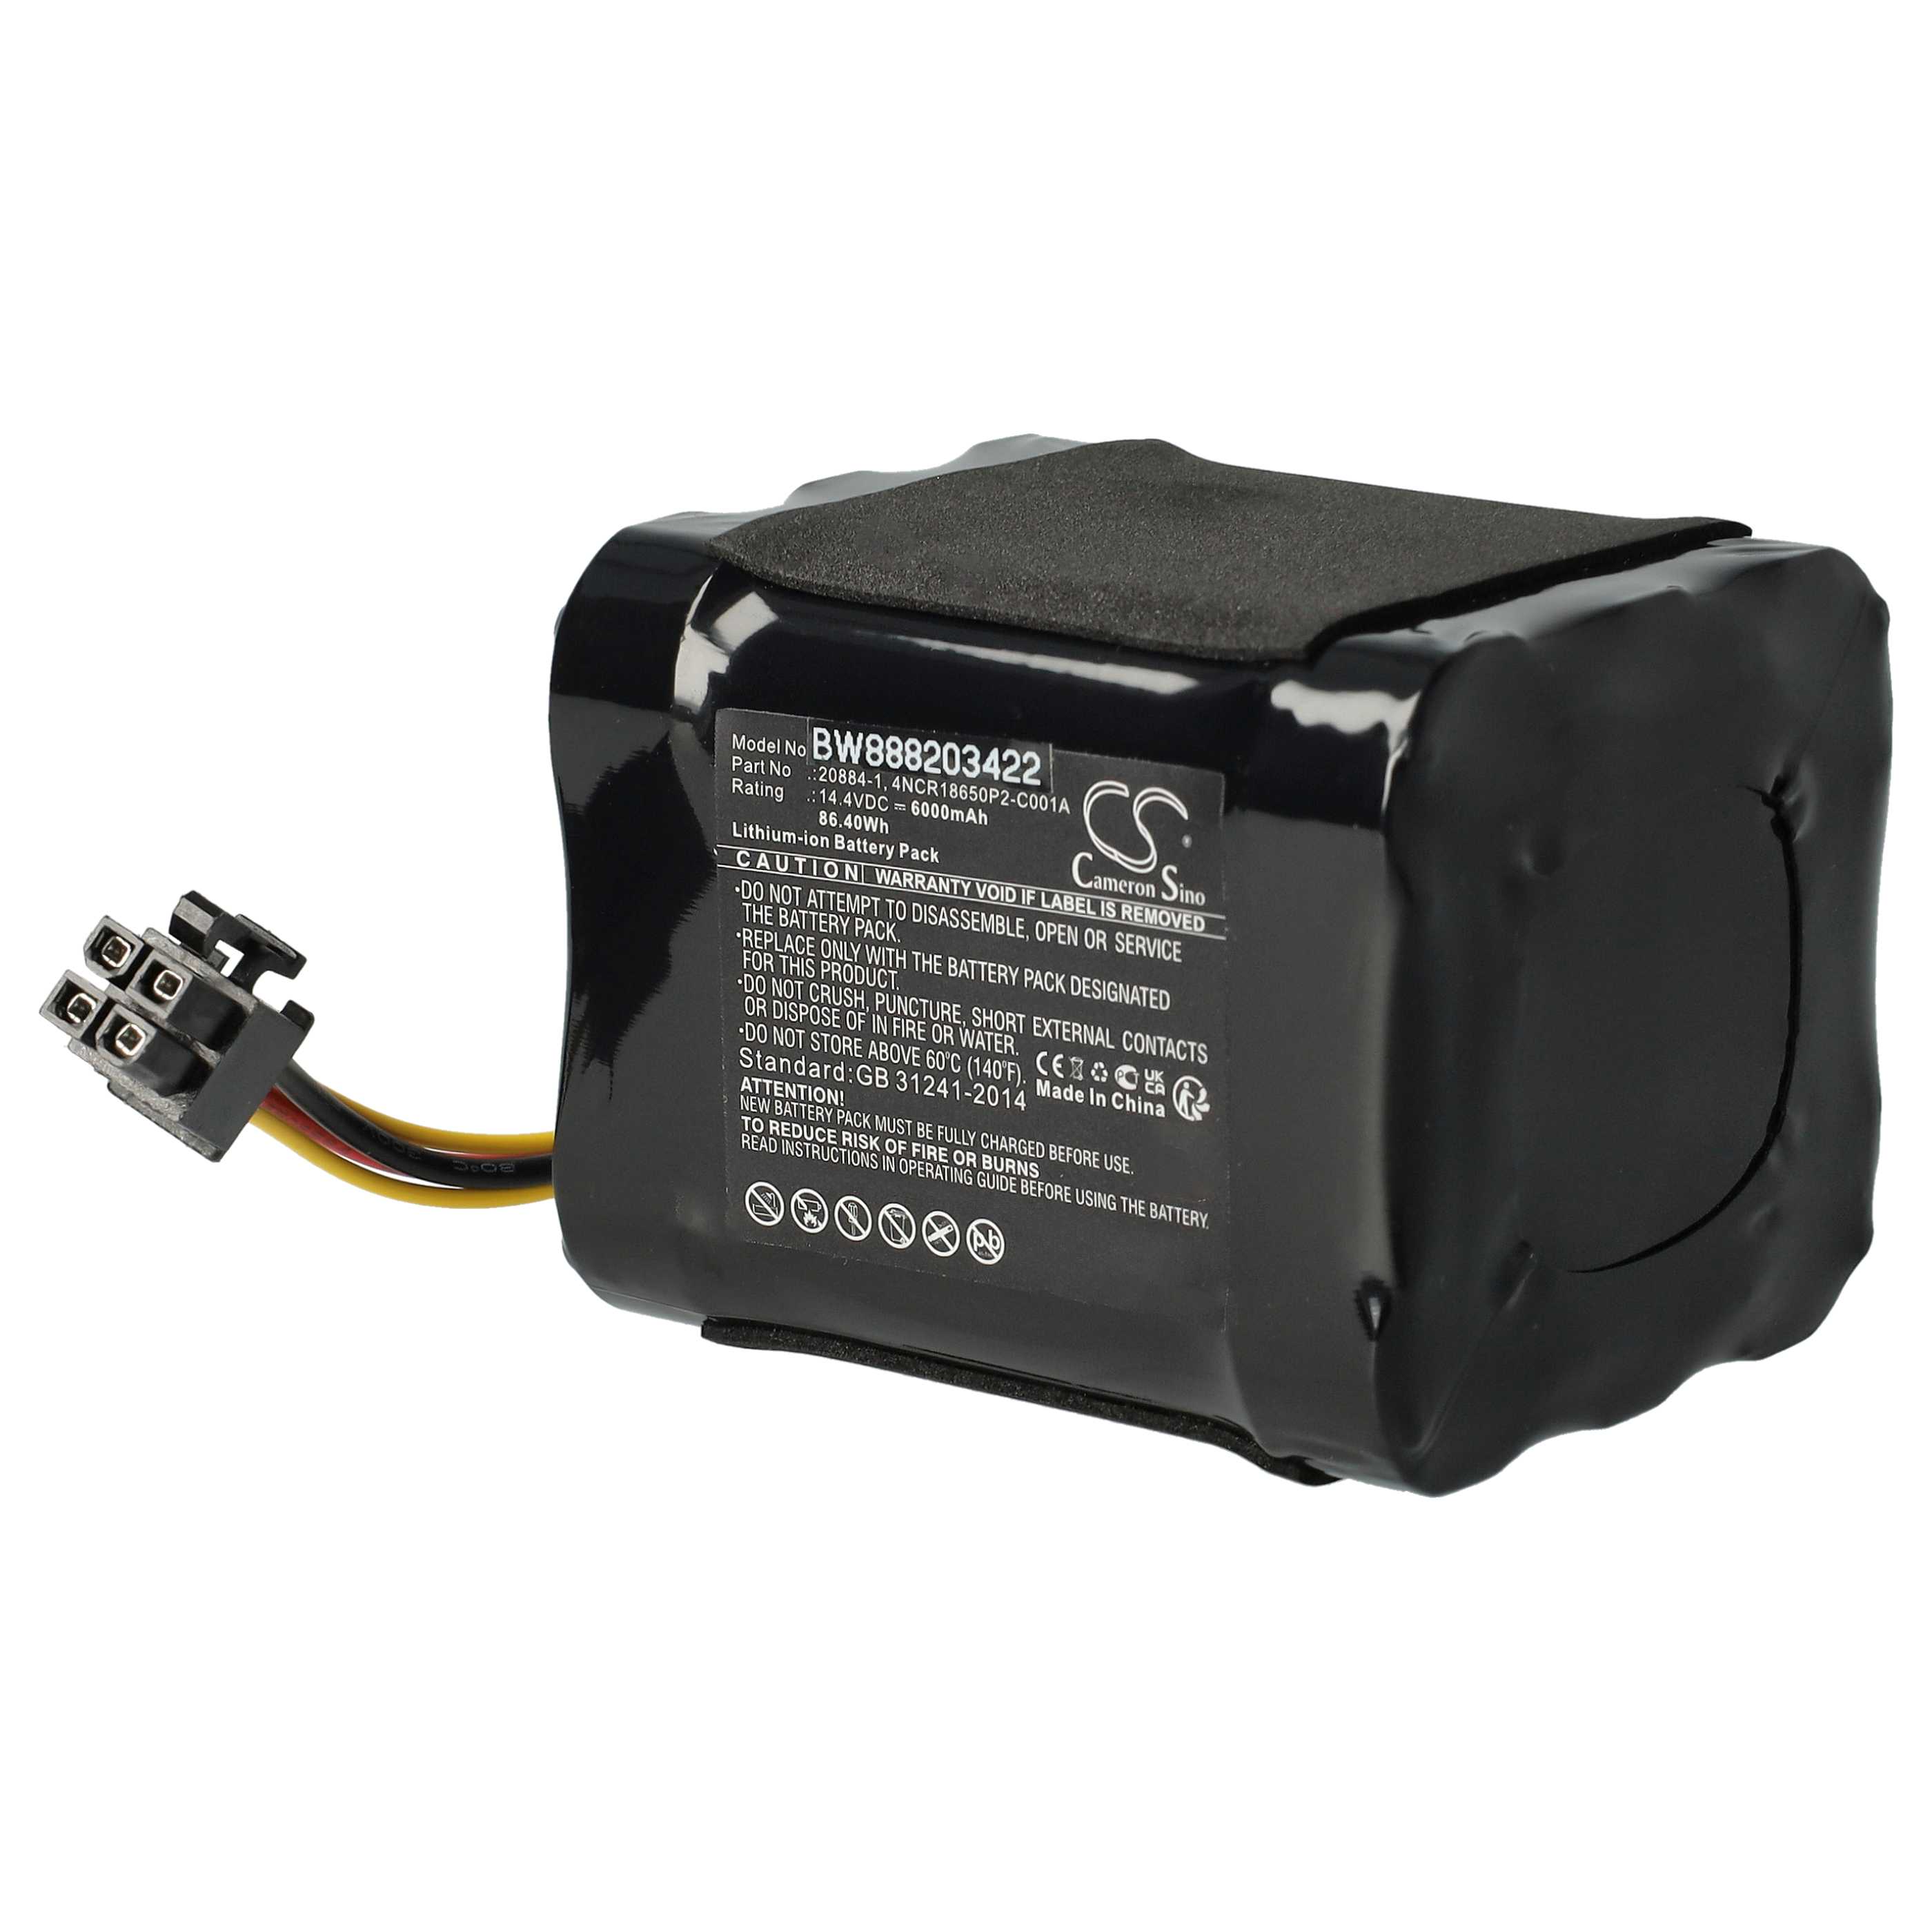 Batterie remplace Vorwerk 20884-1, 4NCR18650P2-C001A pour robot aspirateur - 6000mAh 14,4V Li-ion